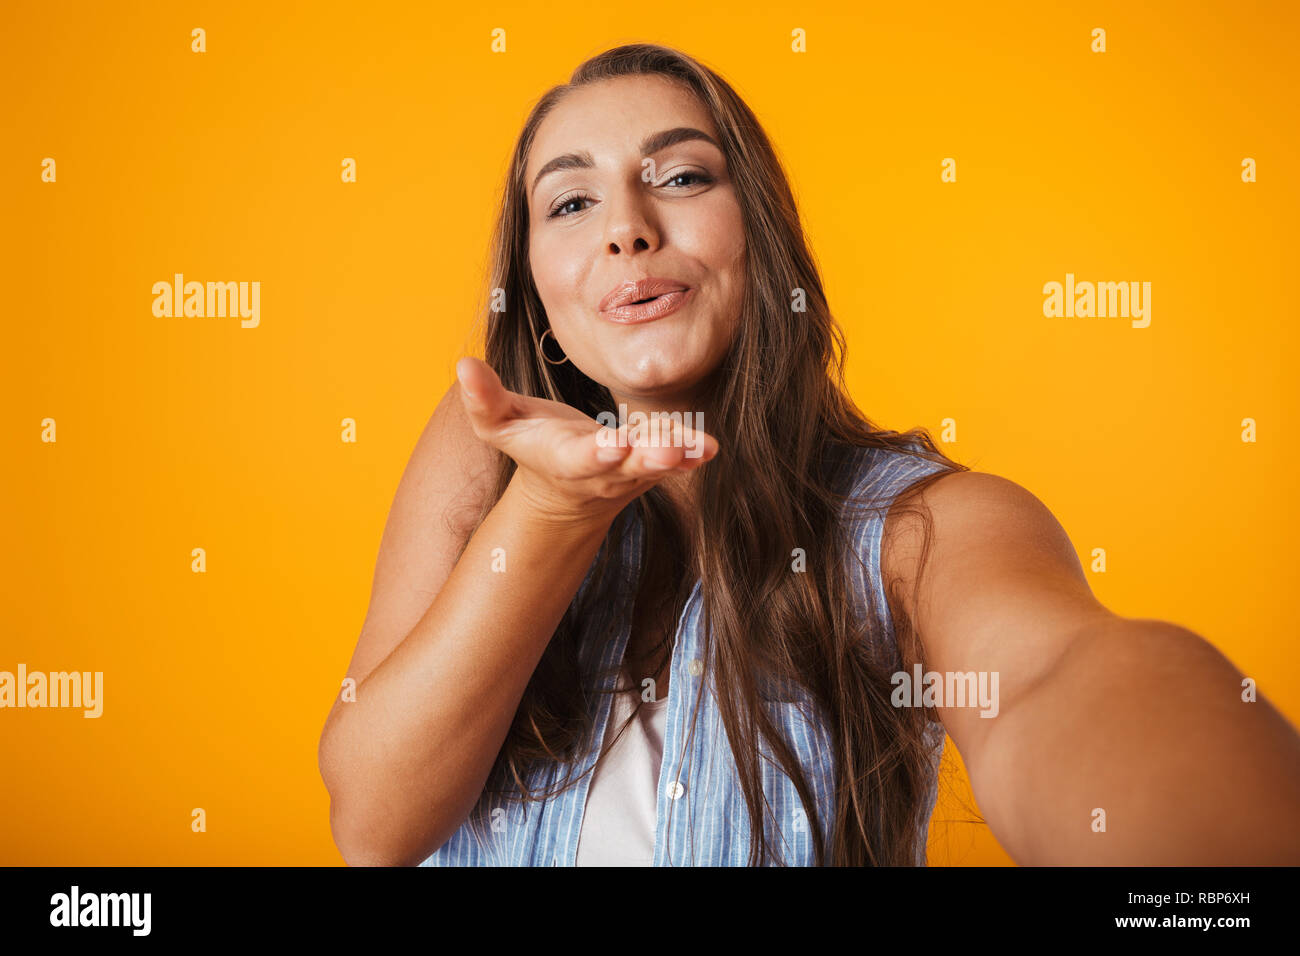 Allegro sovrappeso giovane donna in piedi isolato su sfondo giallo, prendendo un selfie Foto Stock